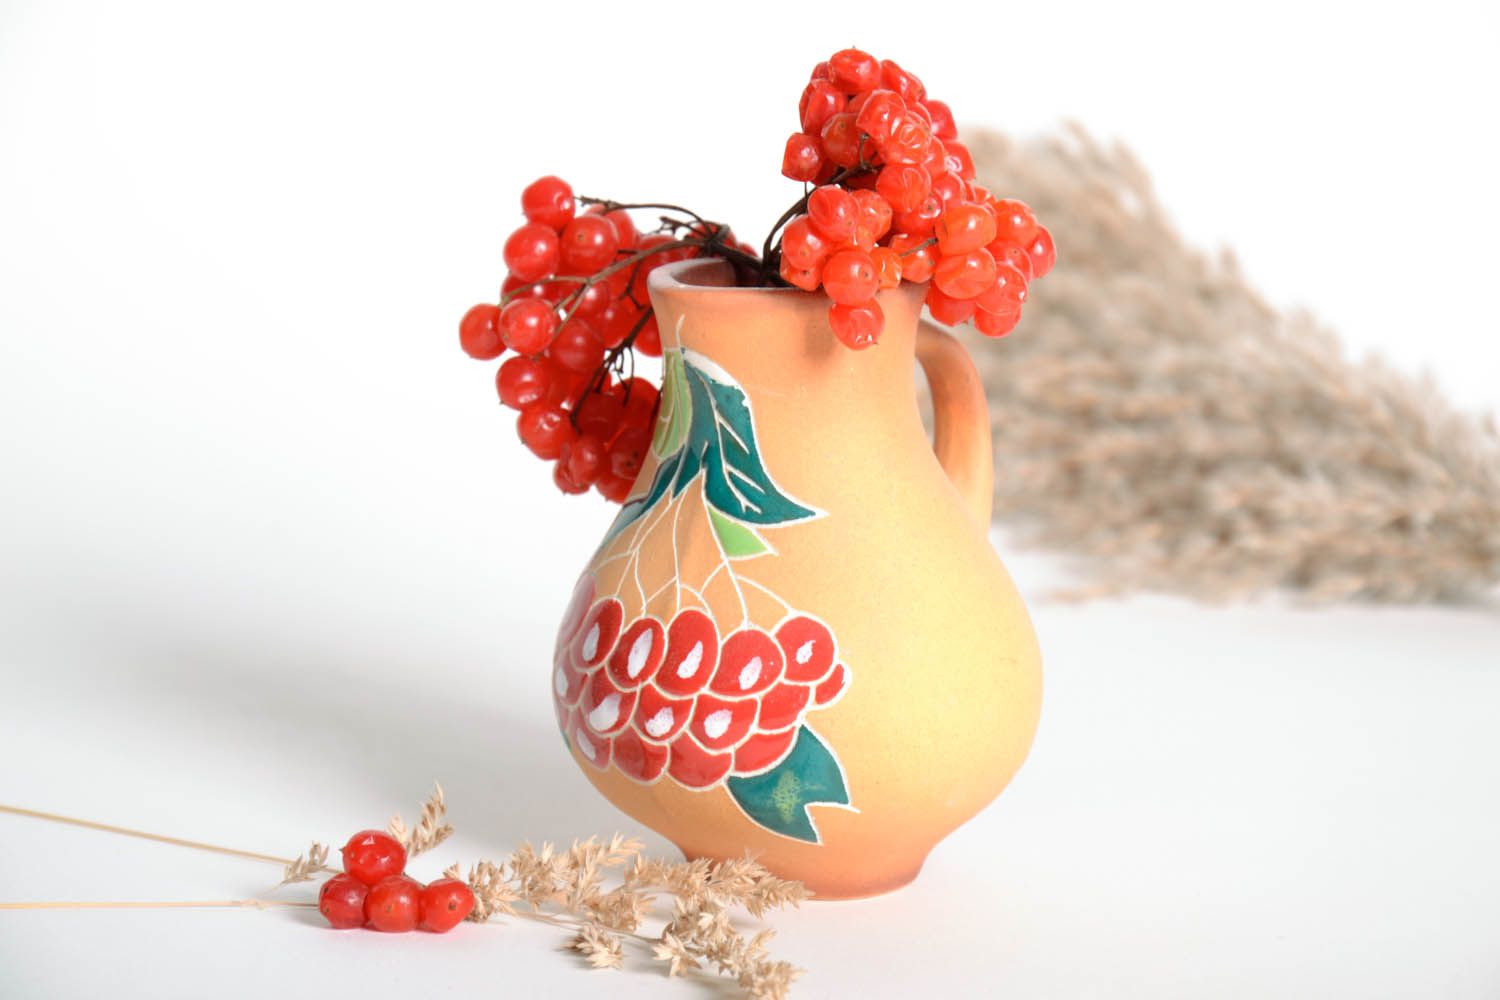 25 oz handmade ceramic water or mil or juice pitcher jug in beige color floral design 0,56 lb photo 1